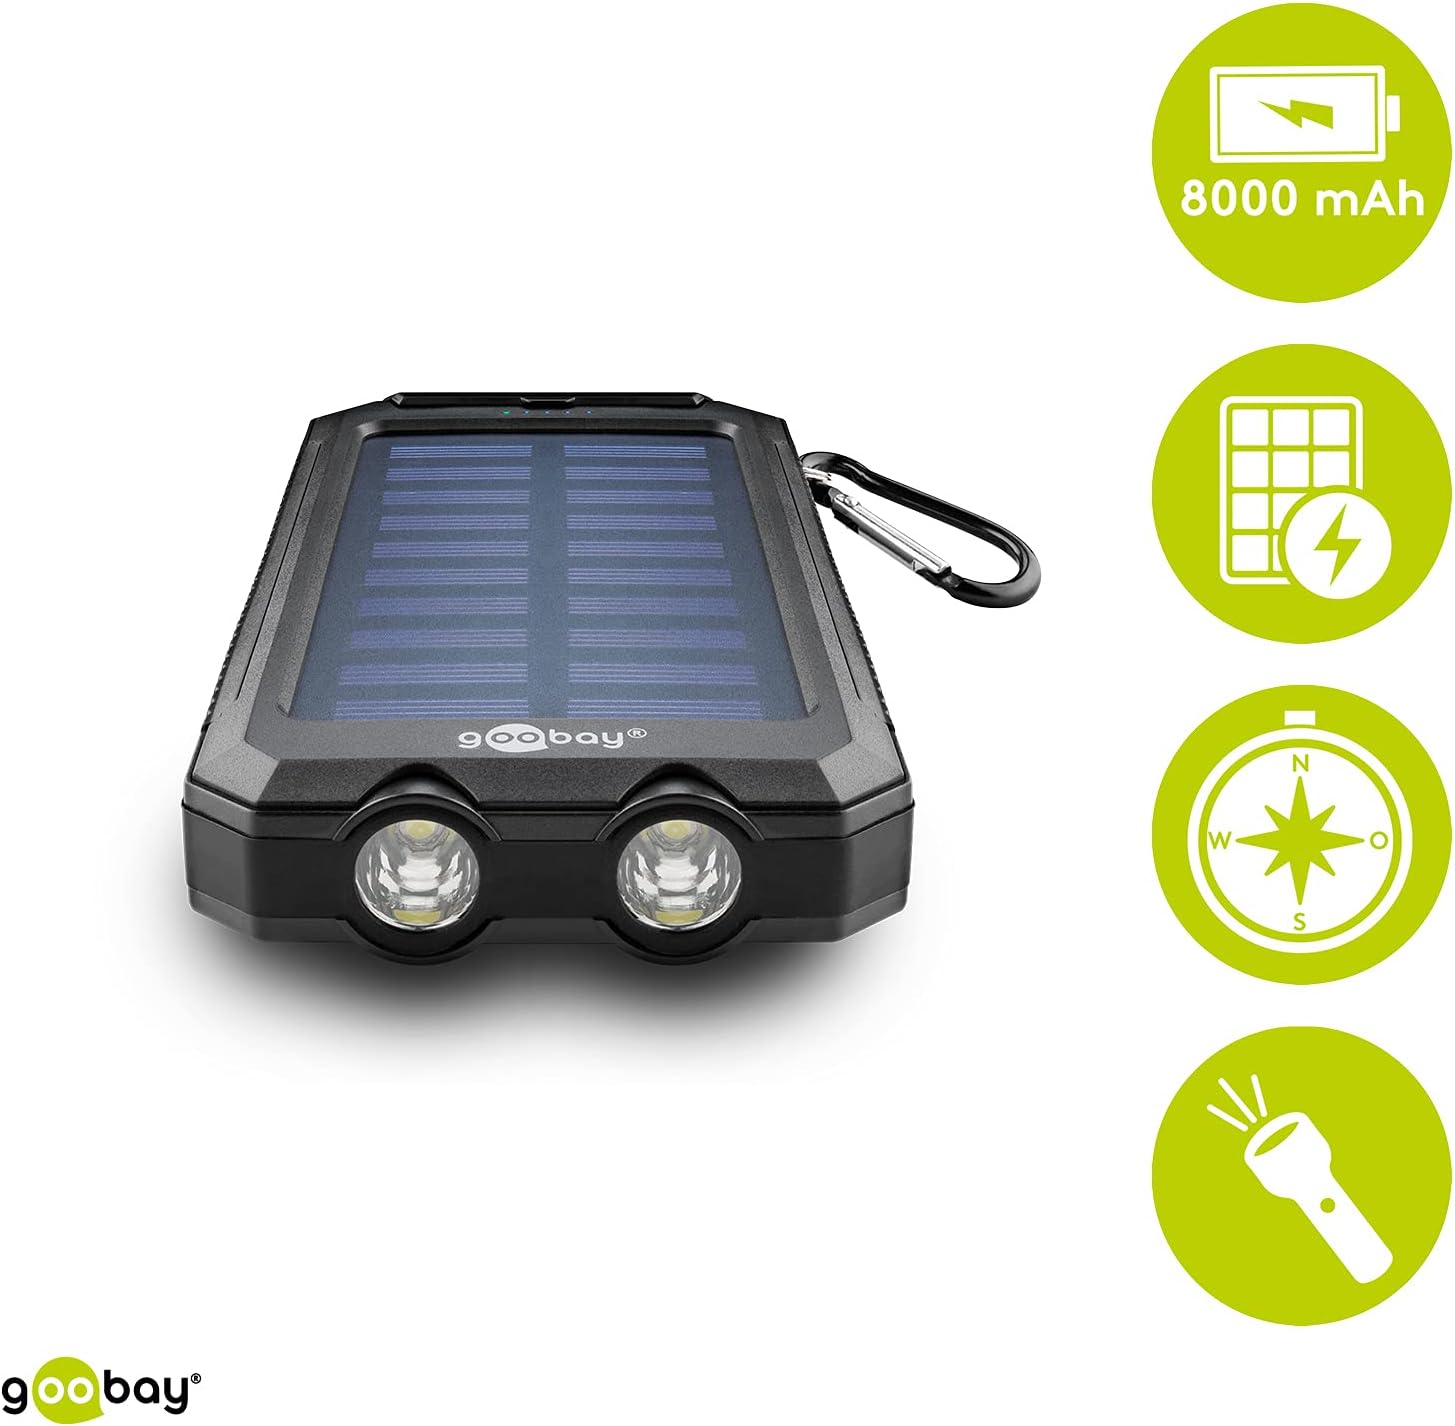 Outdoor Powerbank 8.0 (8.000 mAh), für Outdoor-Abenteuer Dank Robusten Design, Solarpanel und Taschenlampenfunktion